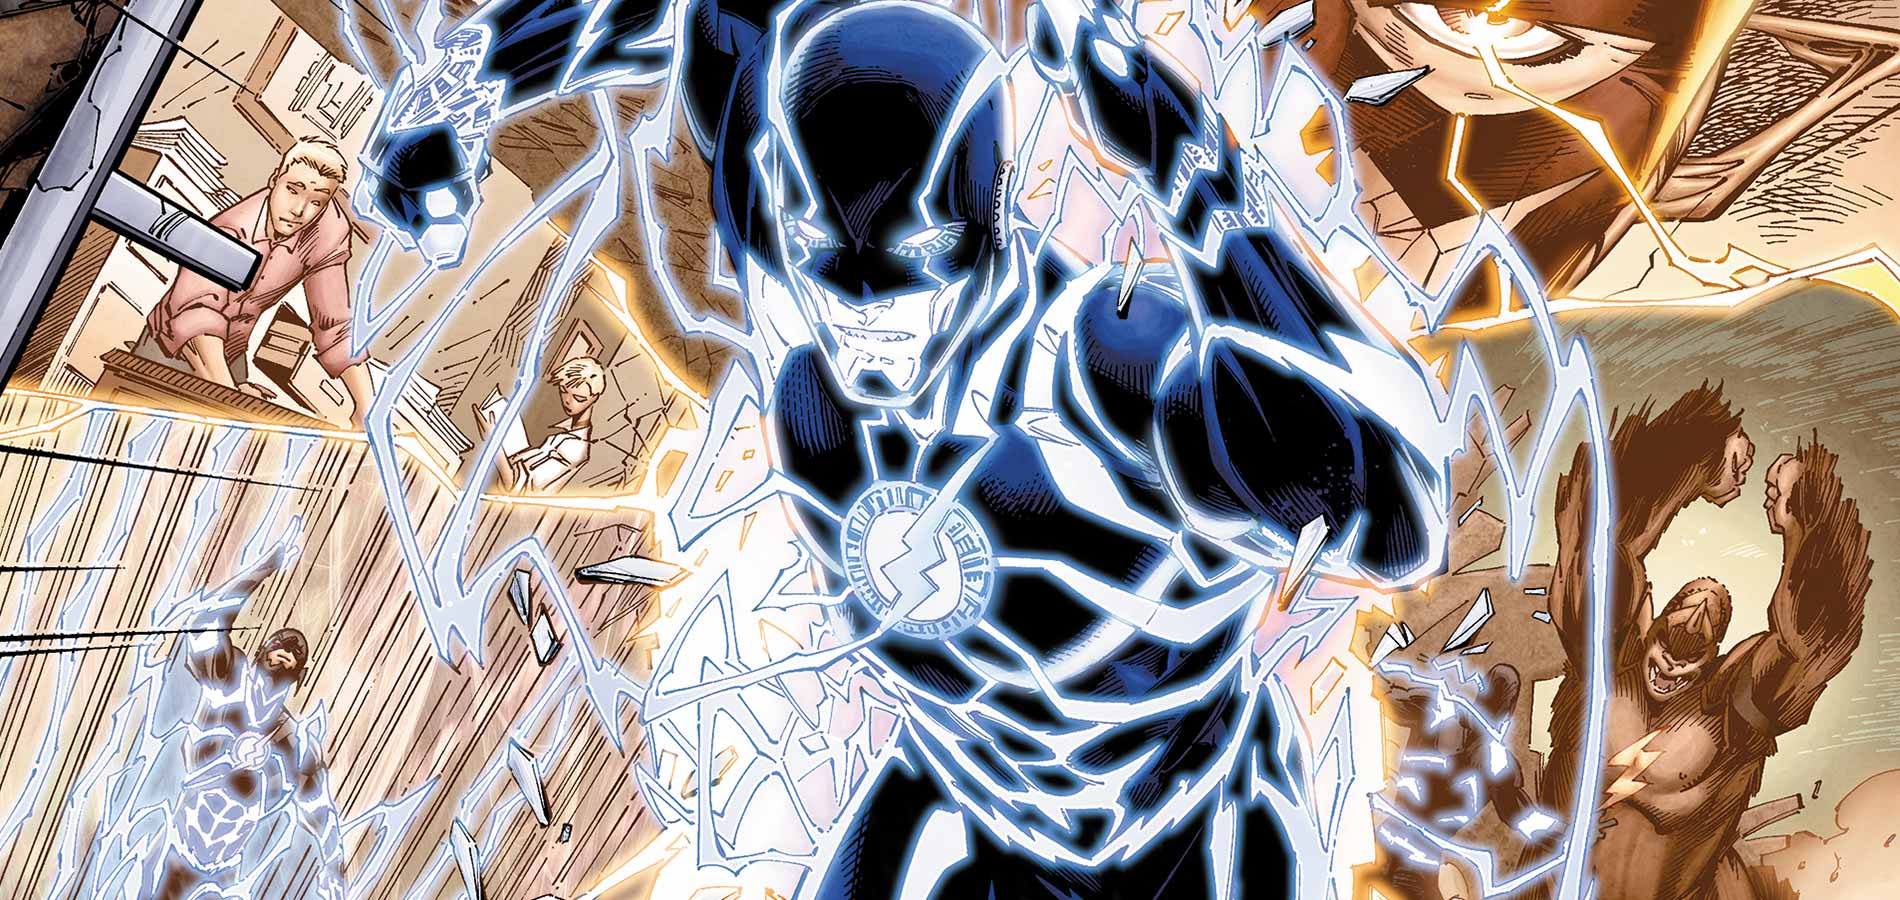 Present Flash Vs Future Flash In the Comics